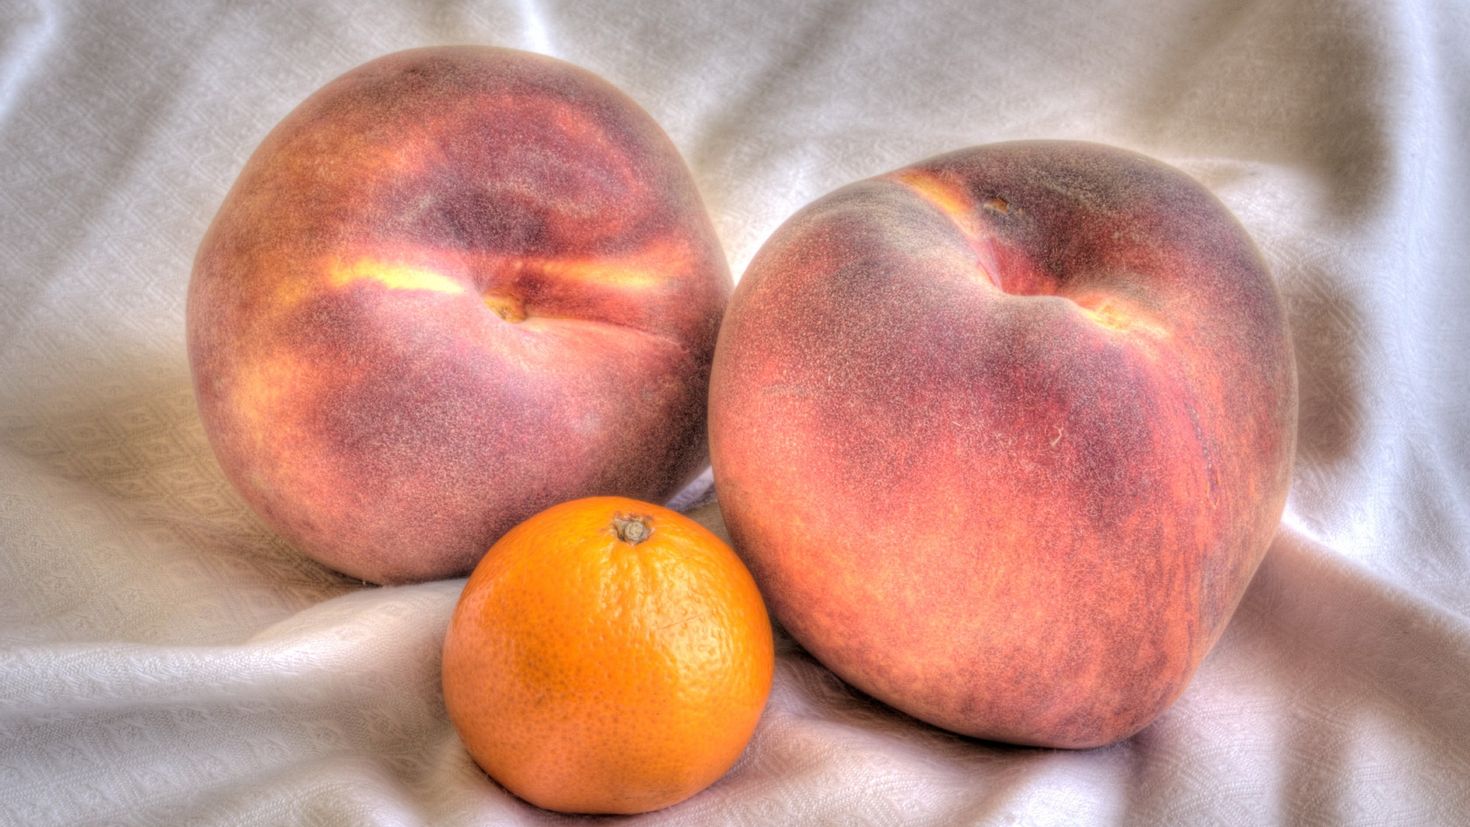 2 12 всех фруктов составляют персики. Персик нектарин абрикос. Нектарин мандарин. Фрукты персики мандарины. Абрикос хурма персик.